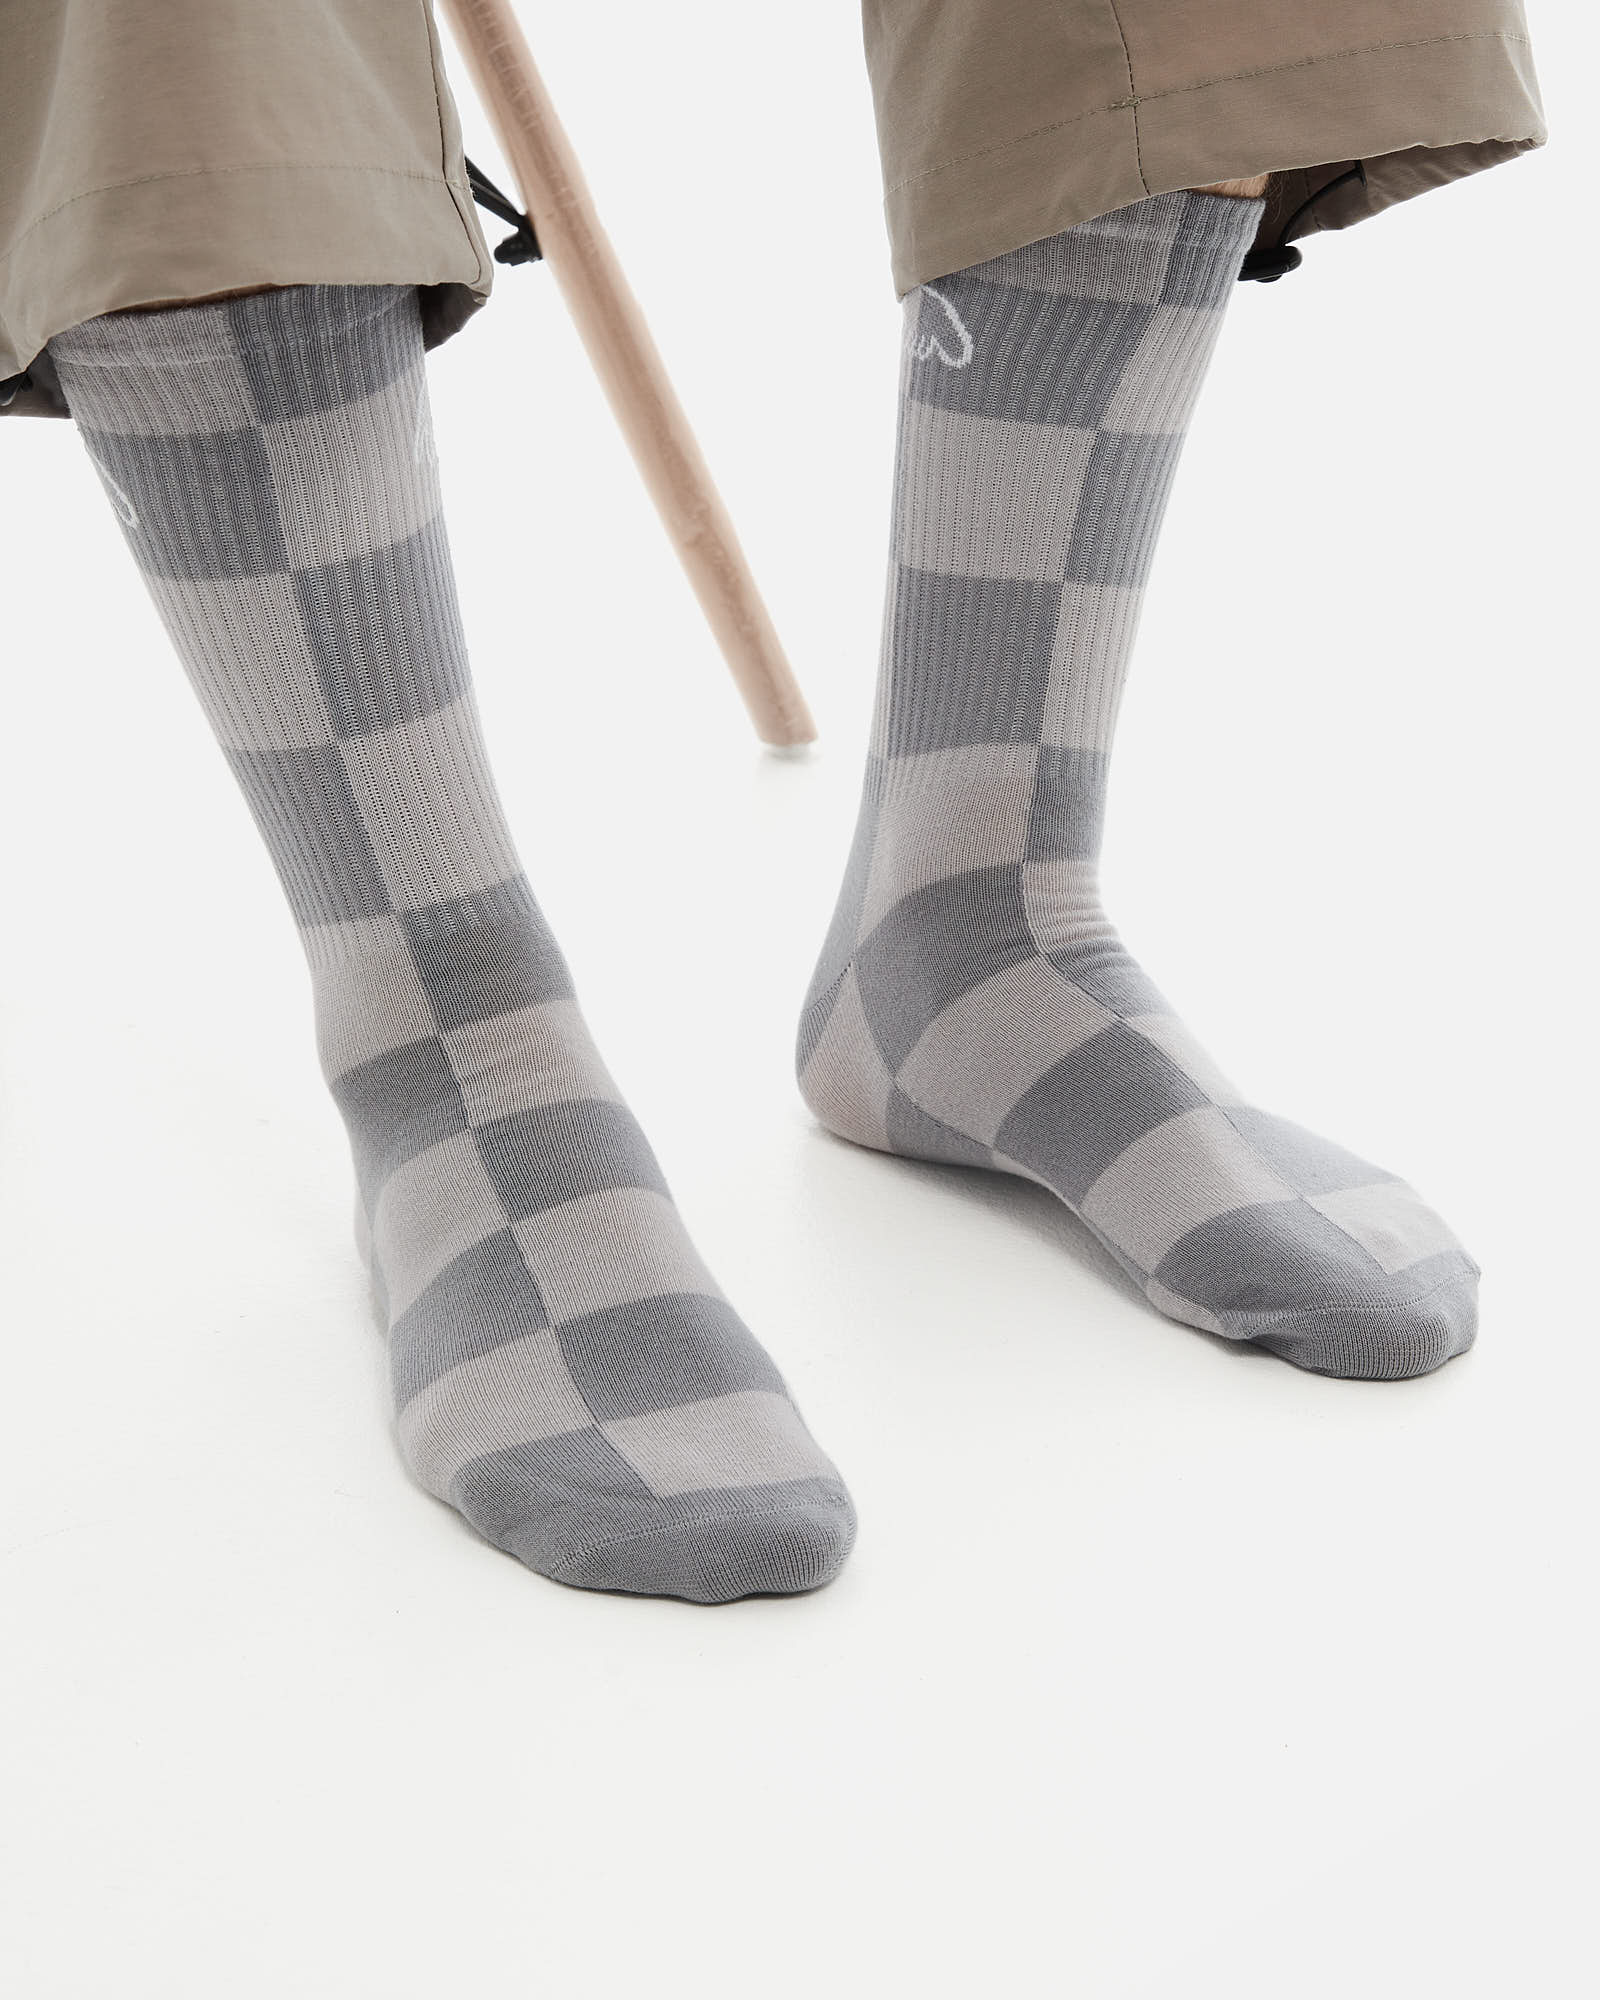 Носки Anteater Socks - фото 1